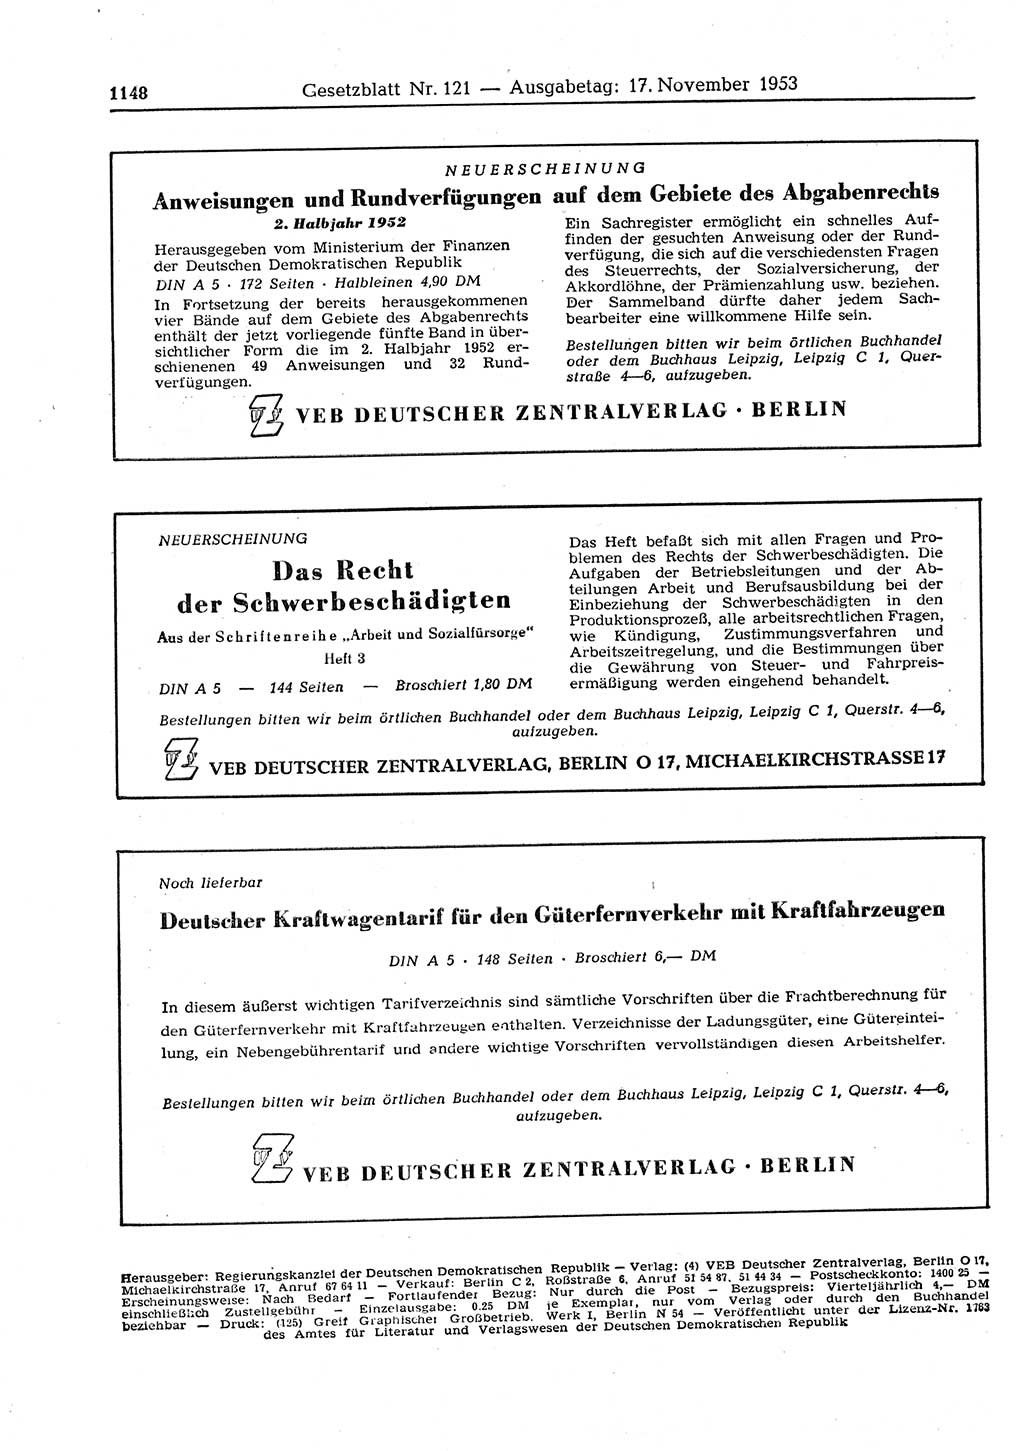 Gesetzblatt (GBl.) der Deutschen Demokratischen Republik (DDR) 1953, Seite 1148 (GBl. DDR 1953, S. 1148)